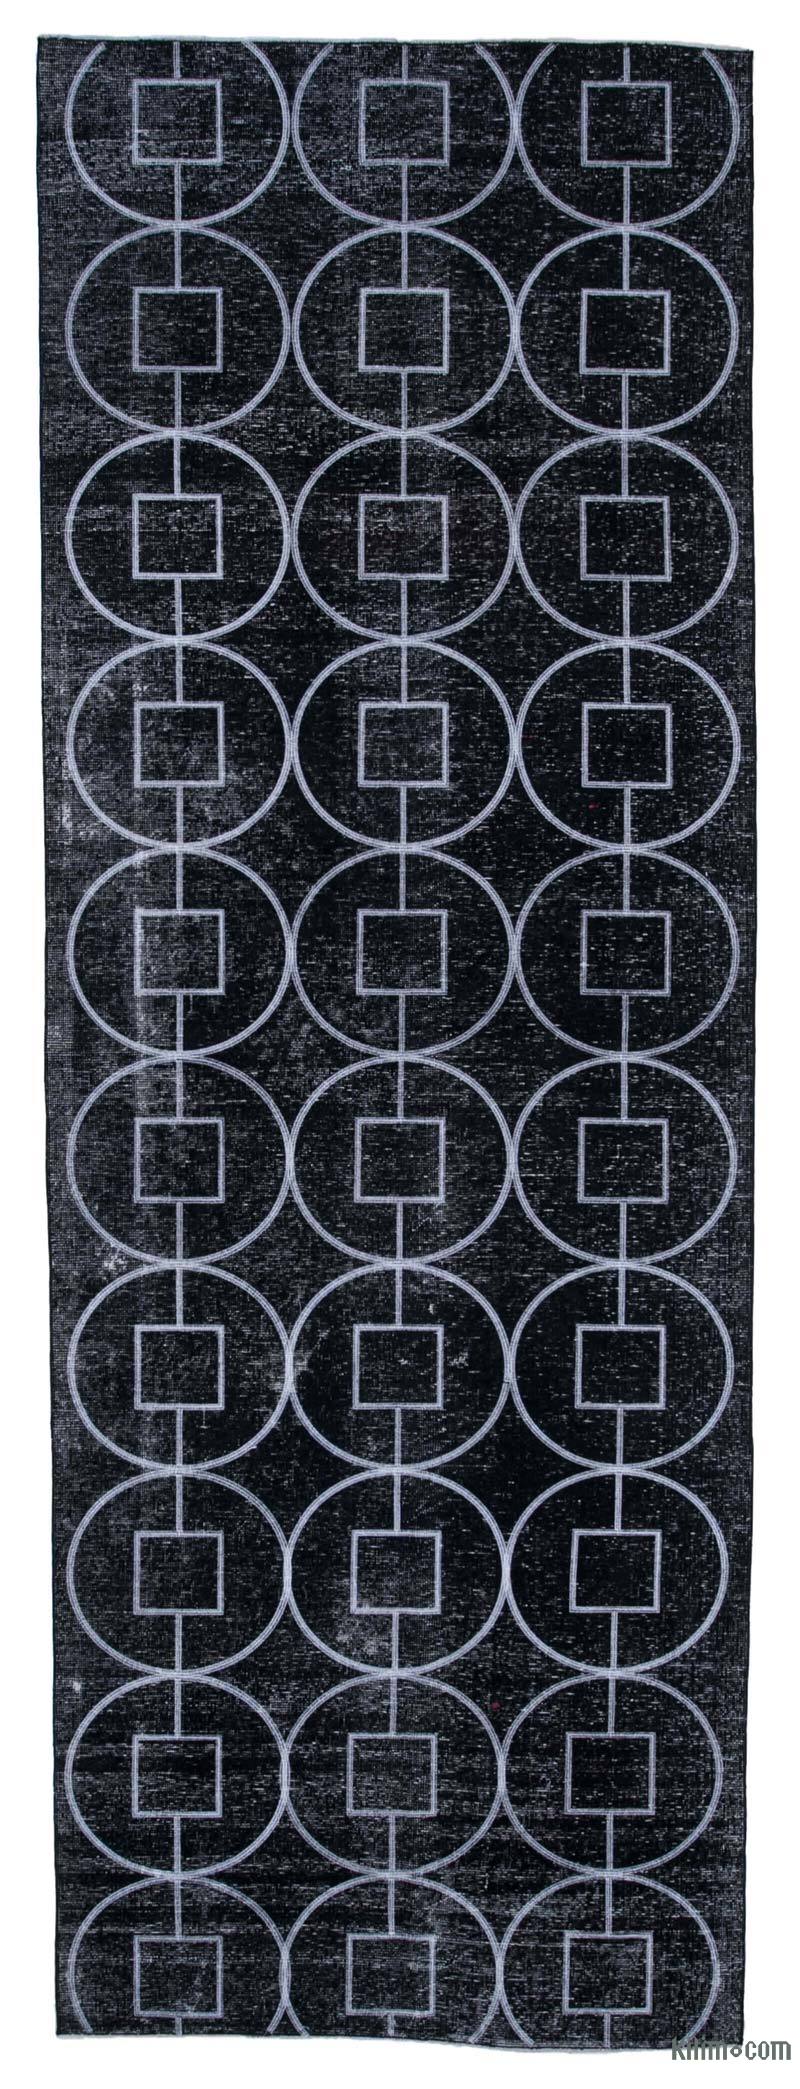 Siyah İşlemeli ve Boyalı El Dokuma Vintage Halı - 137 cm x 390 cm - K0038632